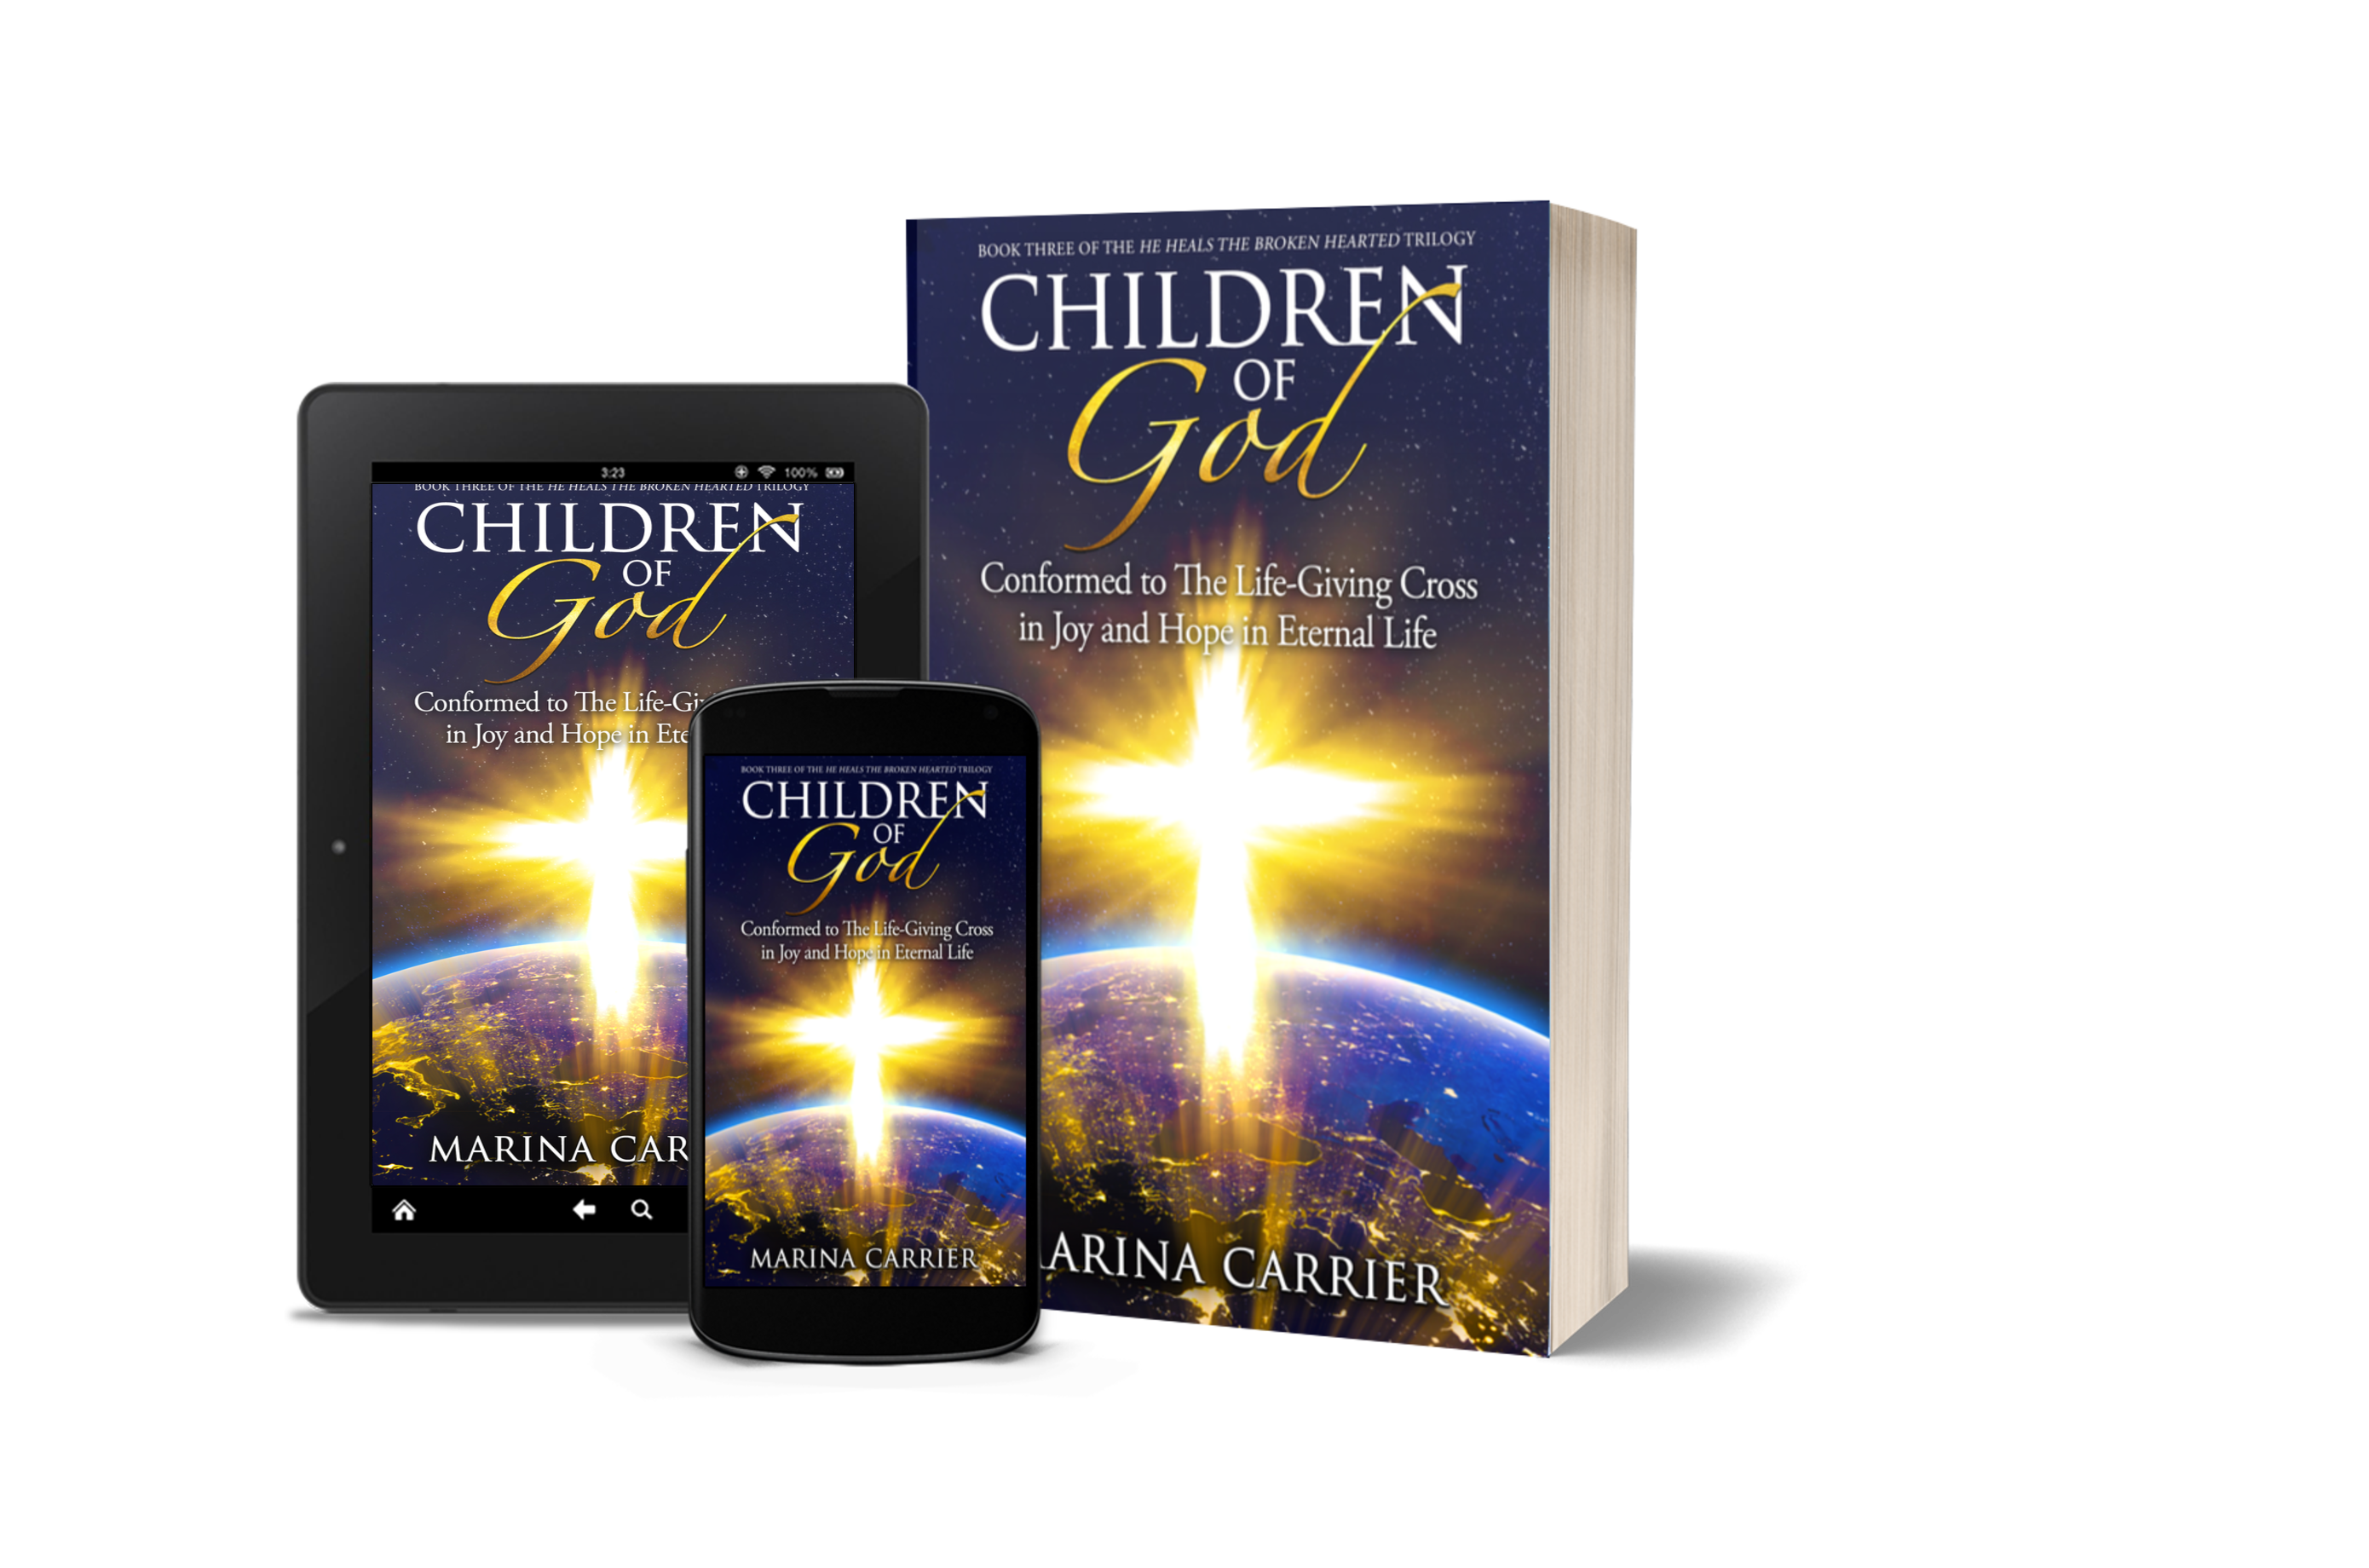 Children of God book images